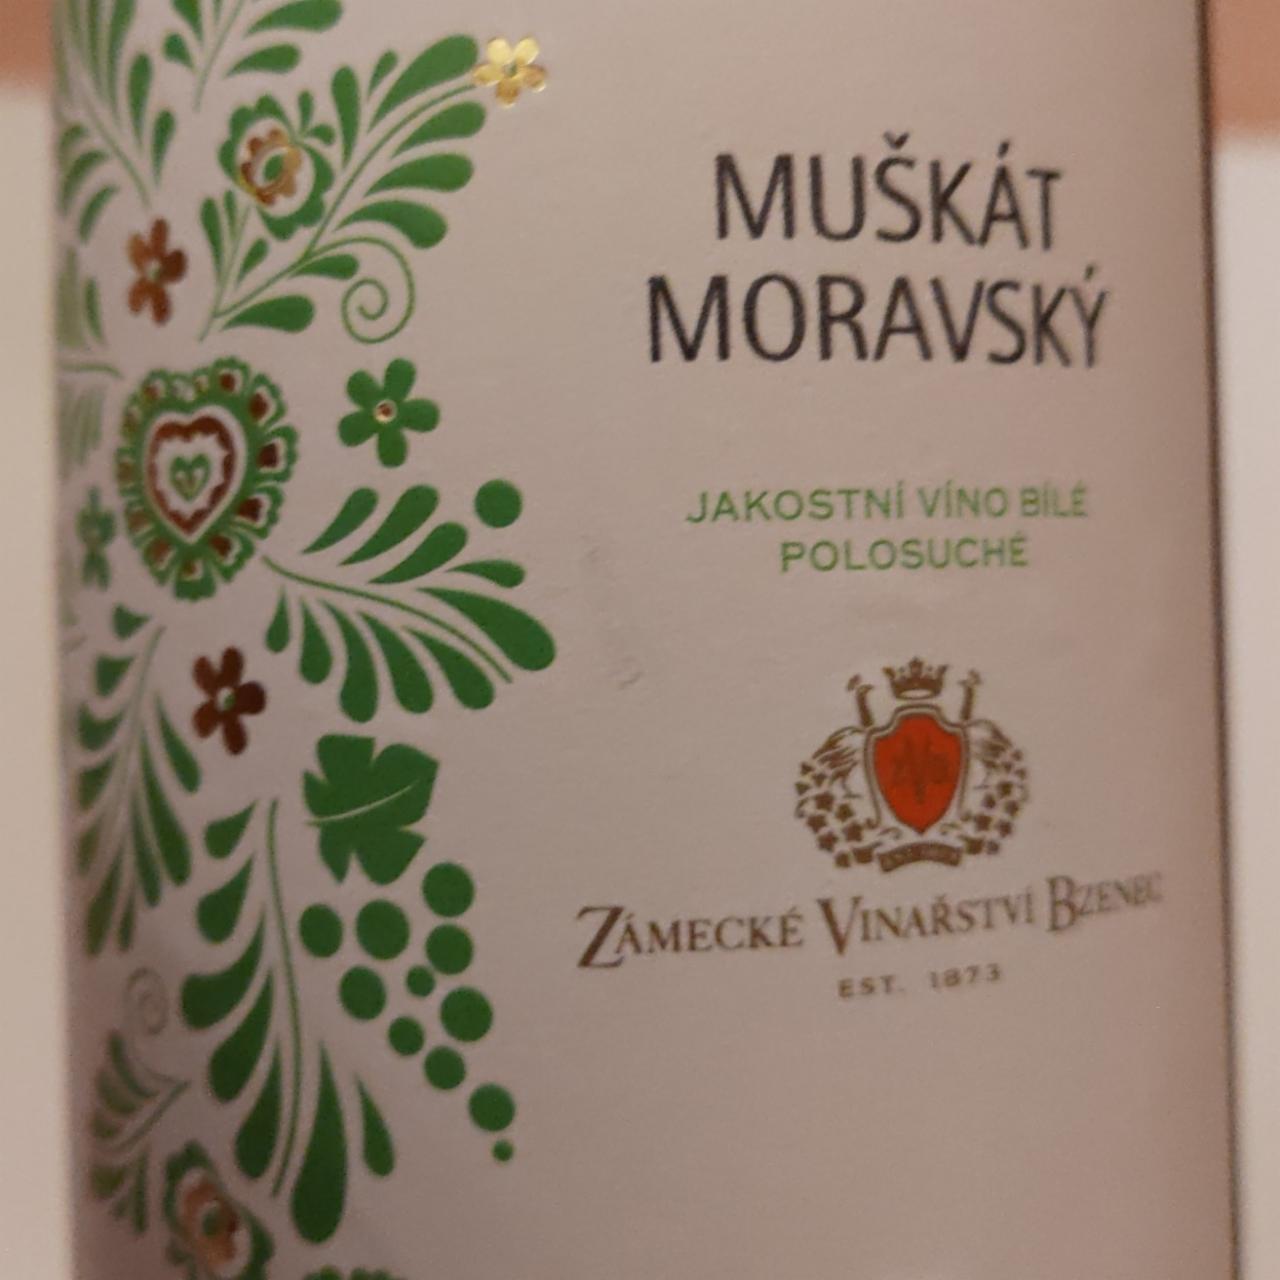 Fotografie - Muškát moravský jakostní polosuchý Vinařství Bzenec